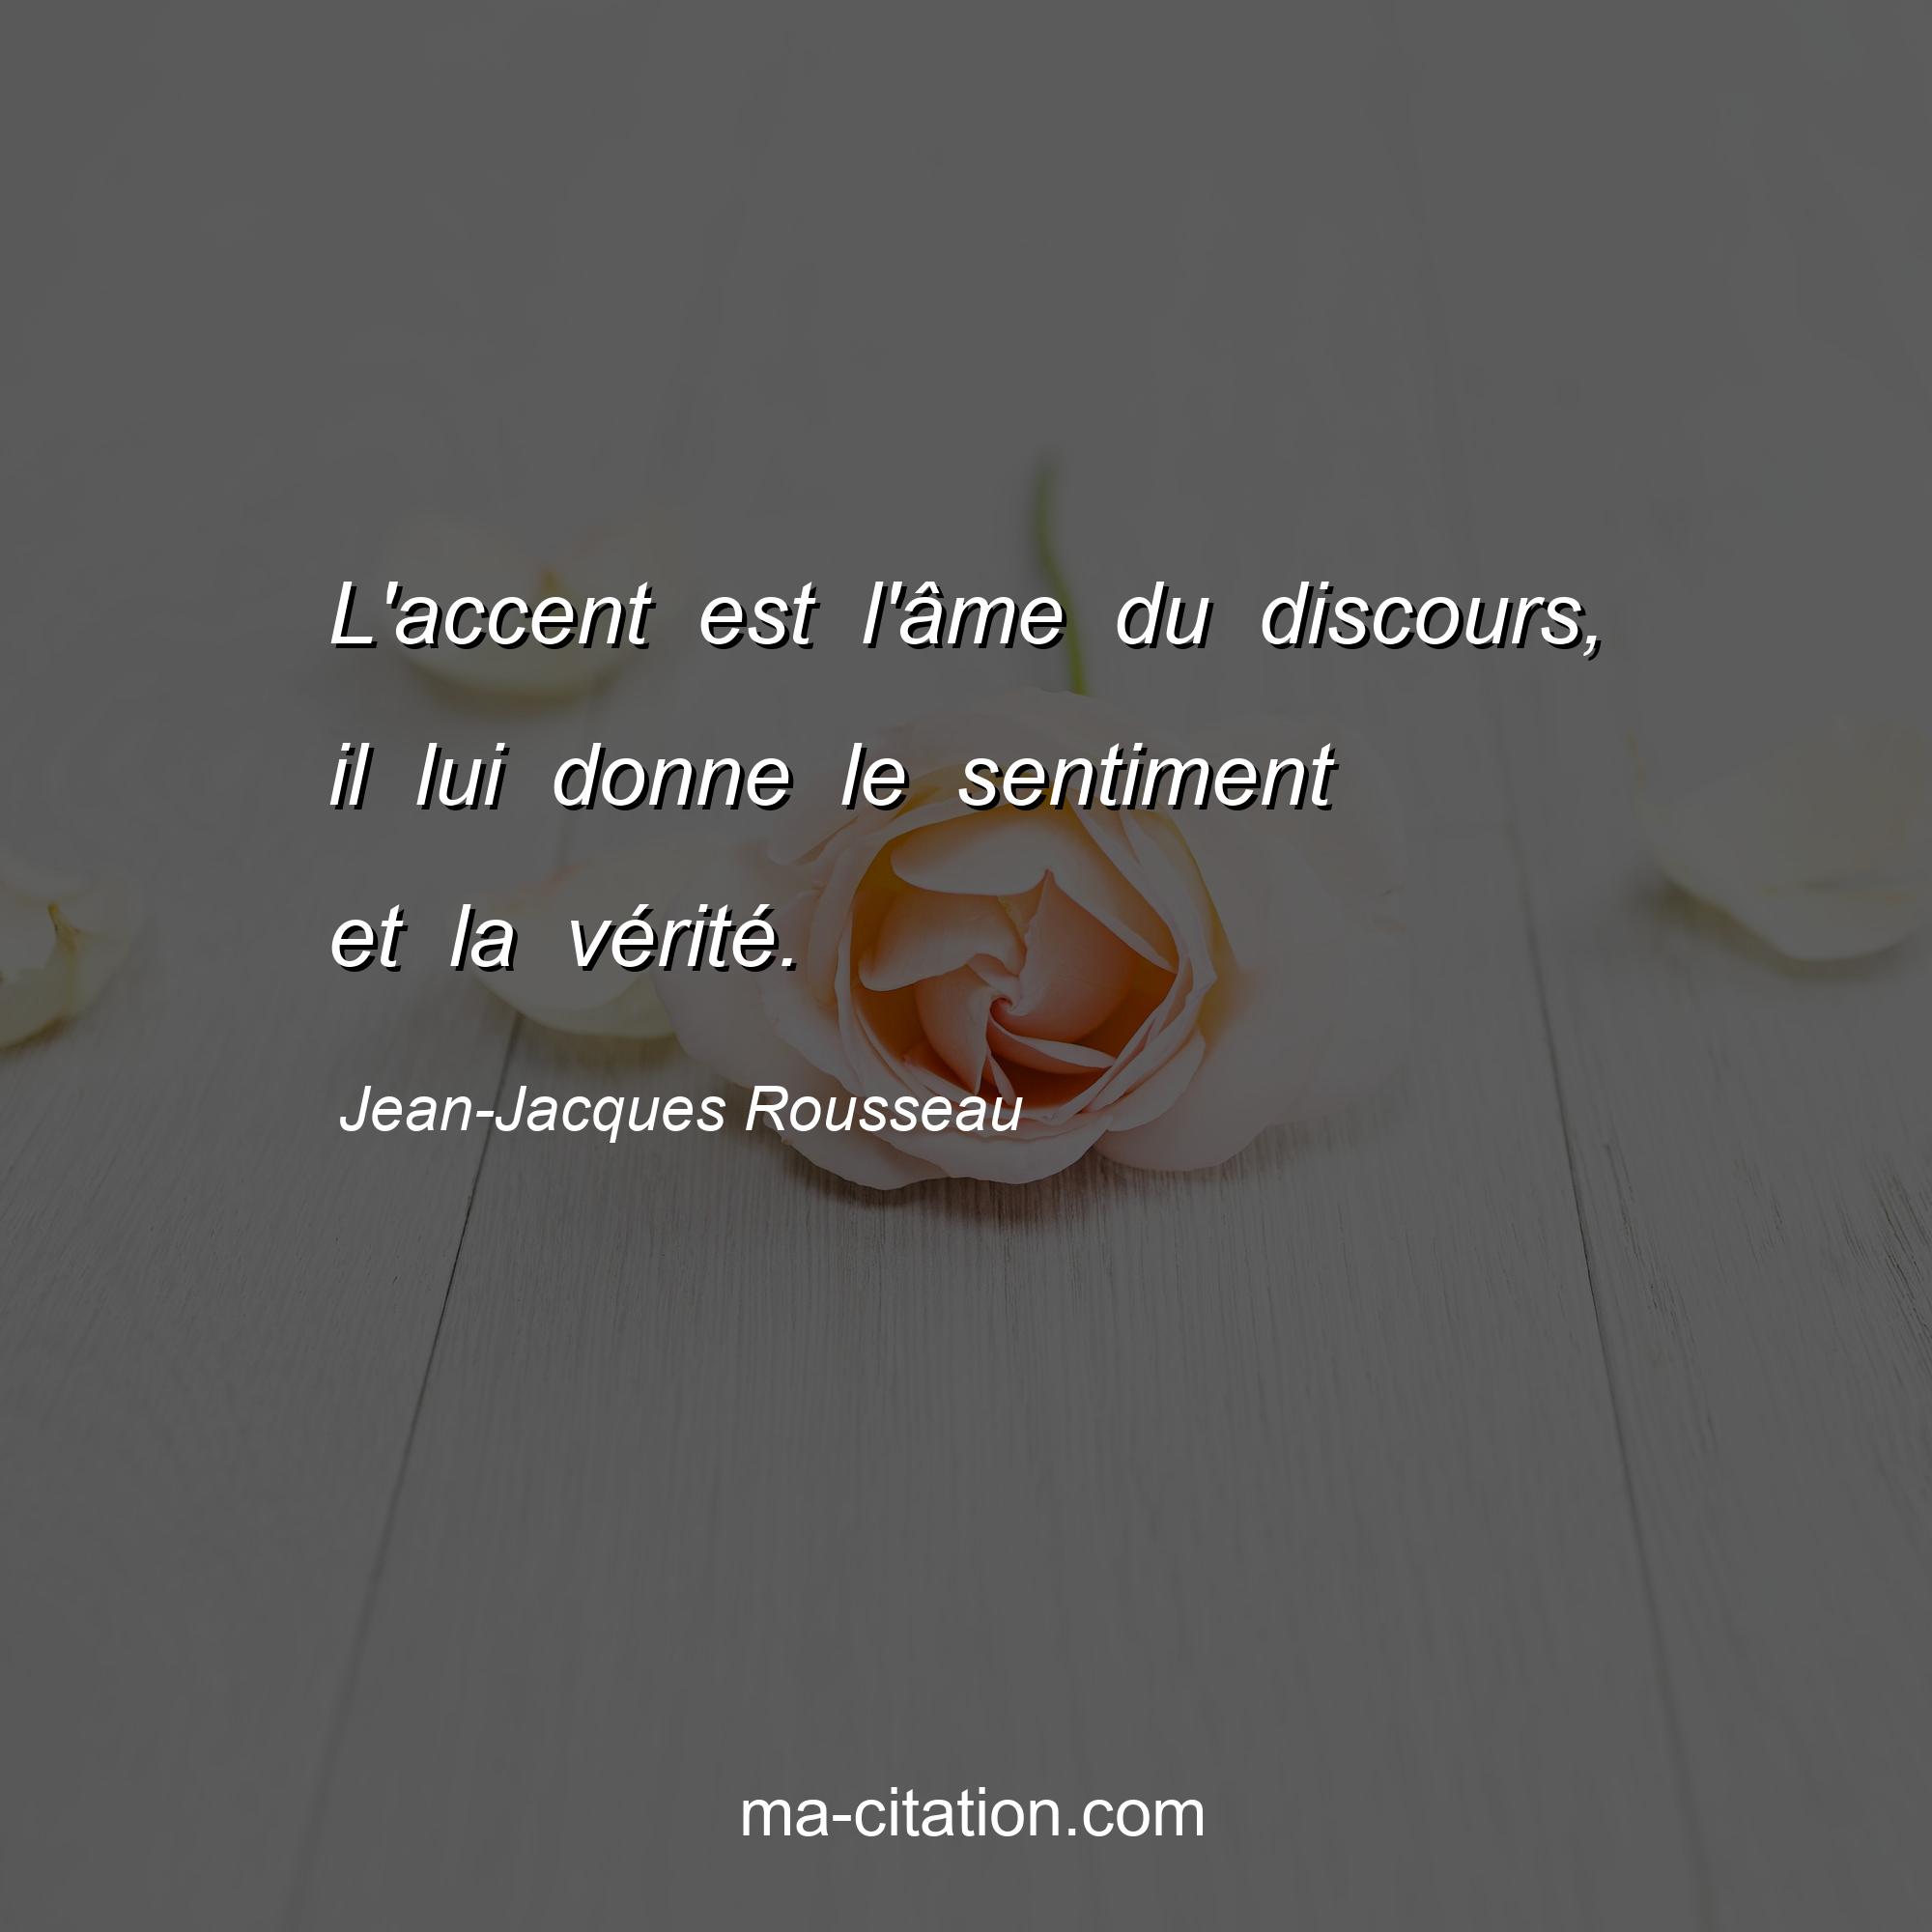 Jean-Jacques Rousseau : L'accent est l'âme du discours, il lui donne le sentiment et la vérité.